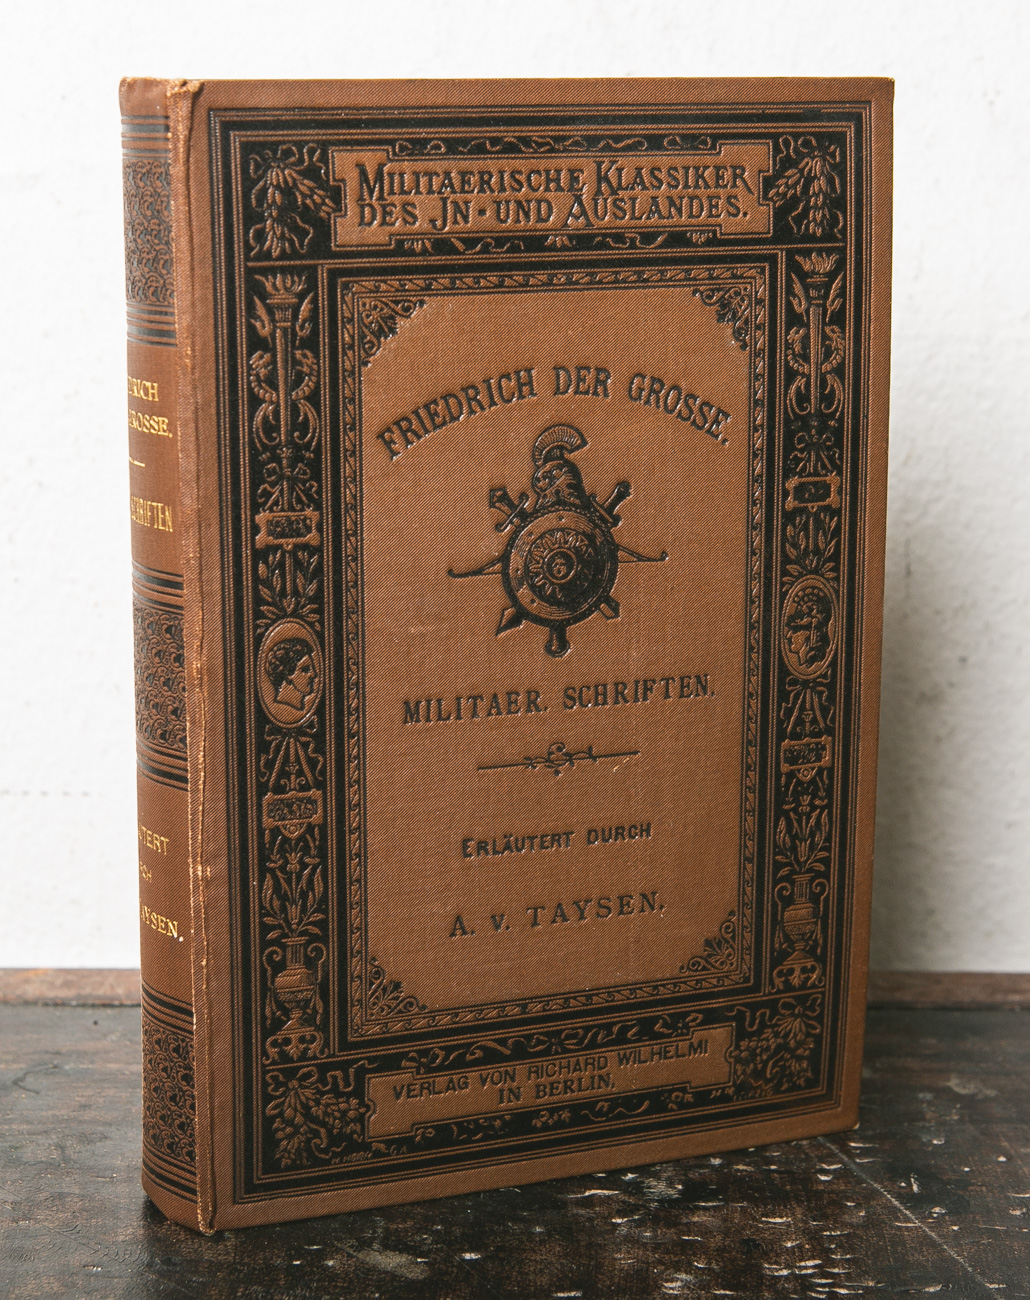 Marées, G. v. (Hrsg.), "Militärische Klassiker des In- und Auslandes: Friedrich der